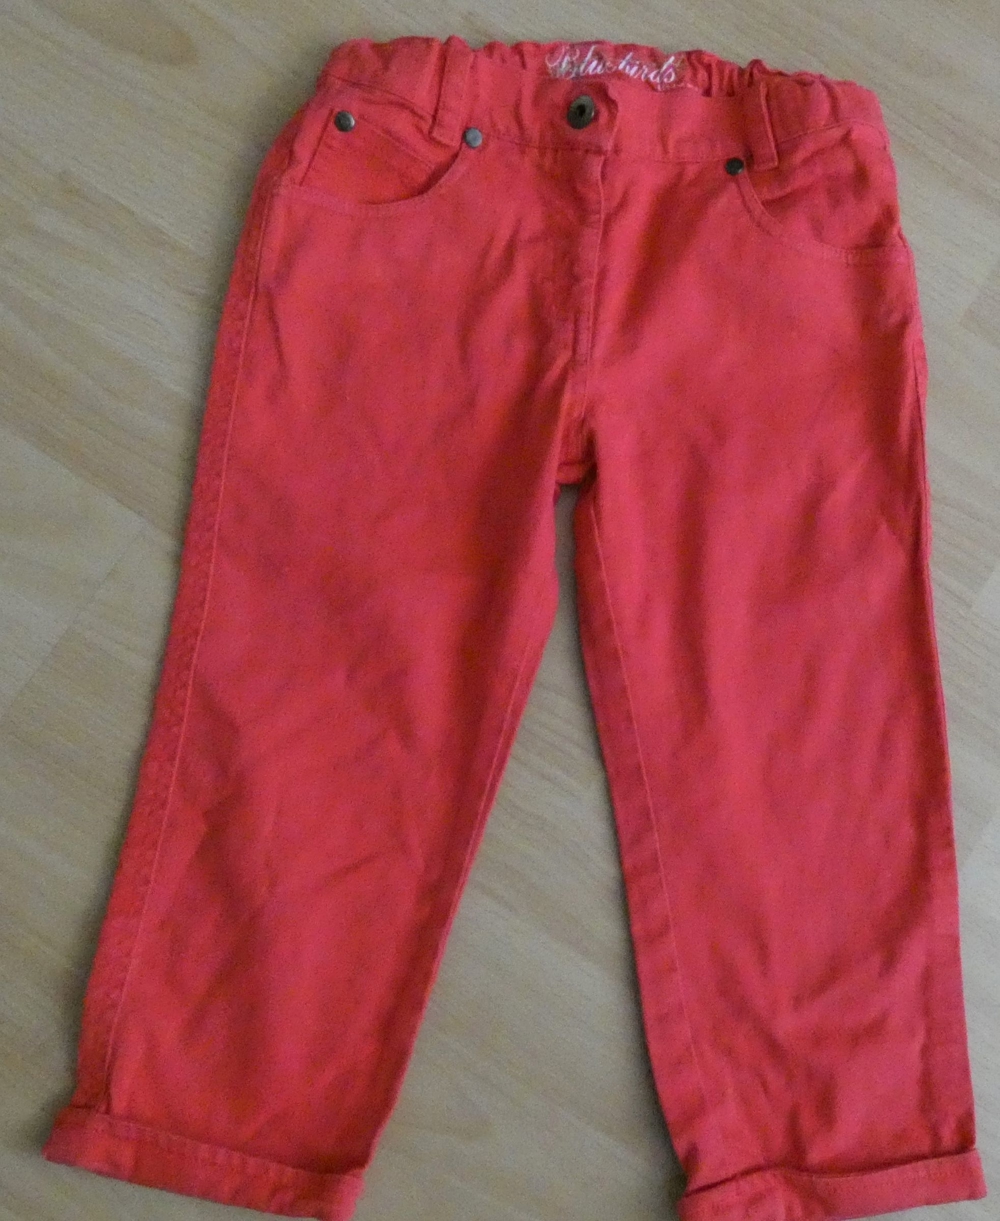 Jeans rot mit Umschlag Gr. 146 ca. 58 cm lang INSCENE